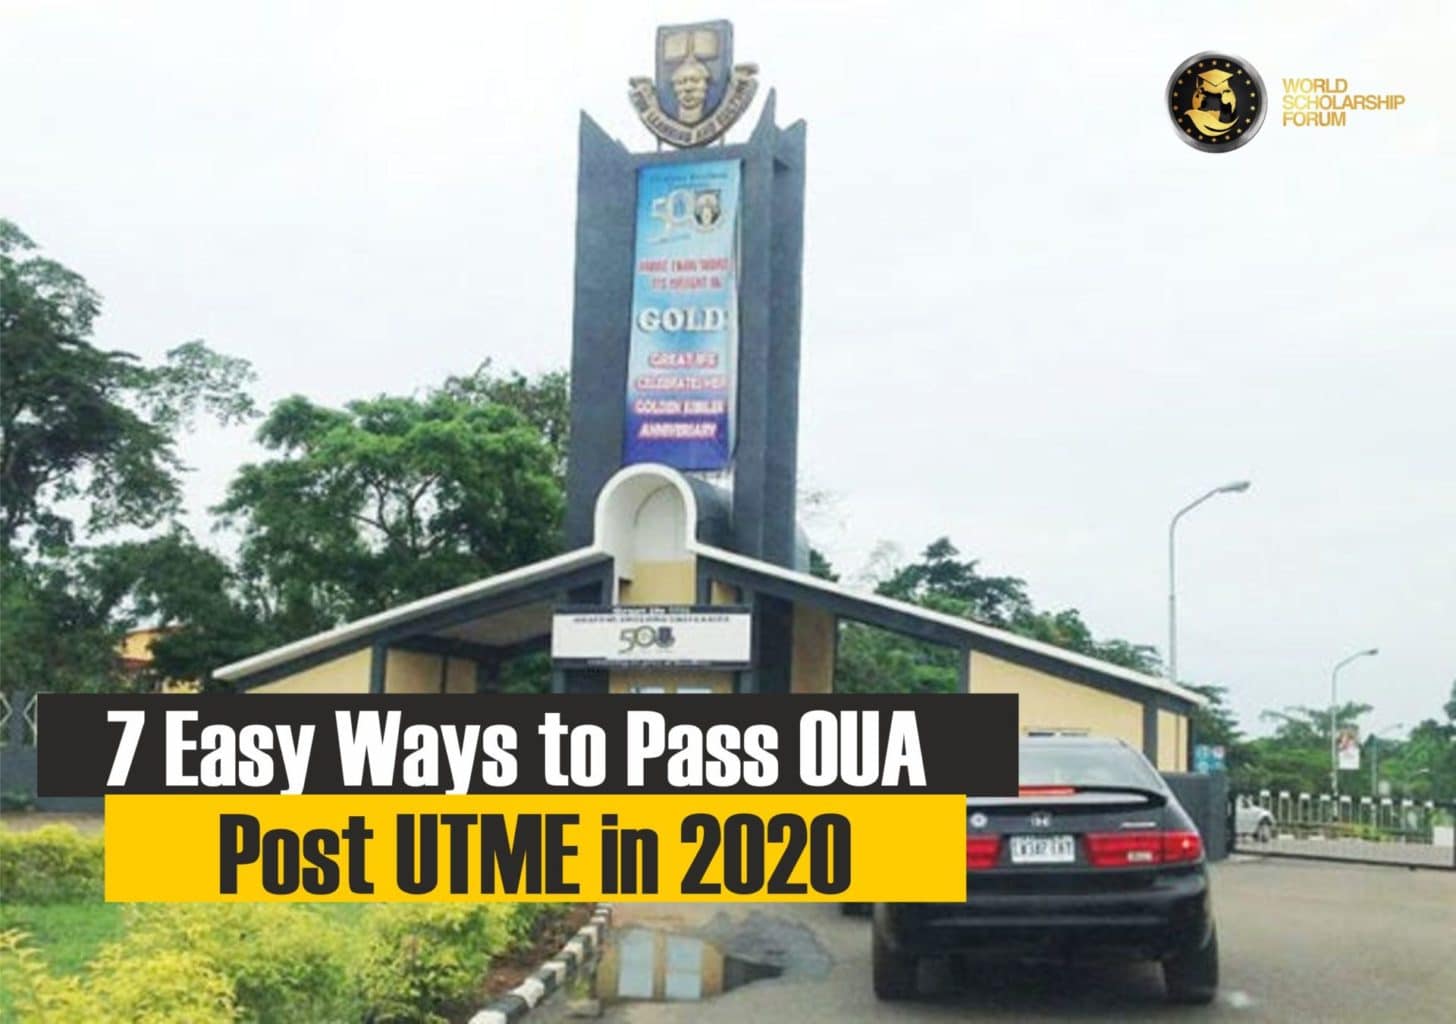 Wege zum Pass OAU Post-Utme